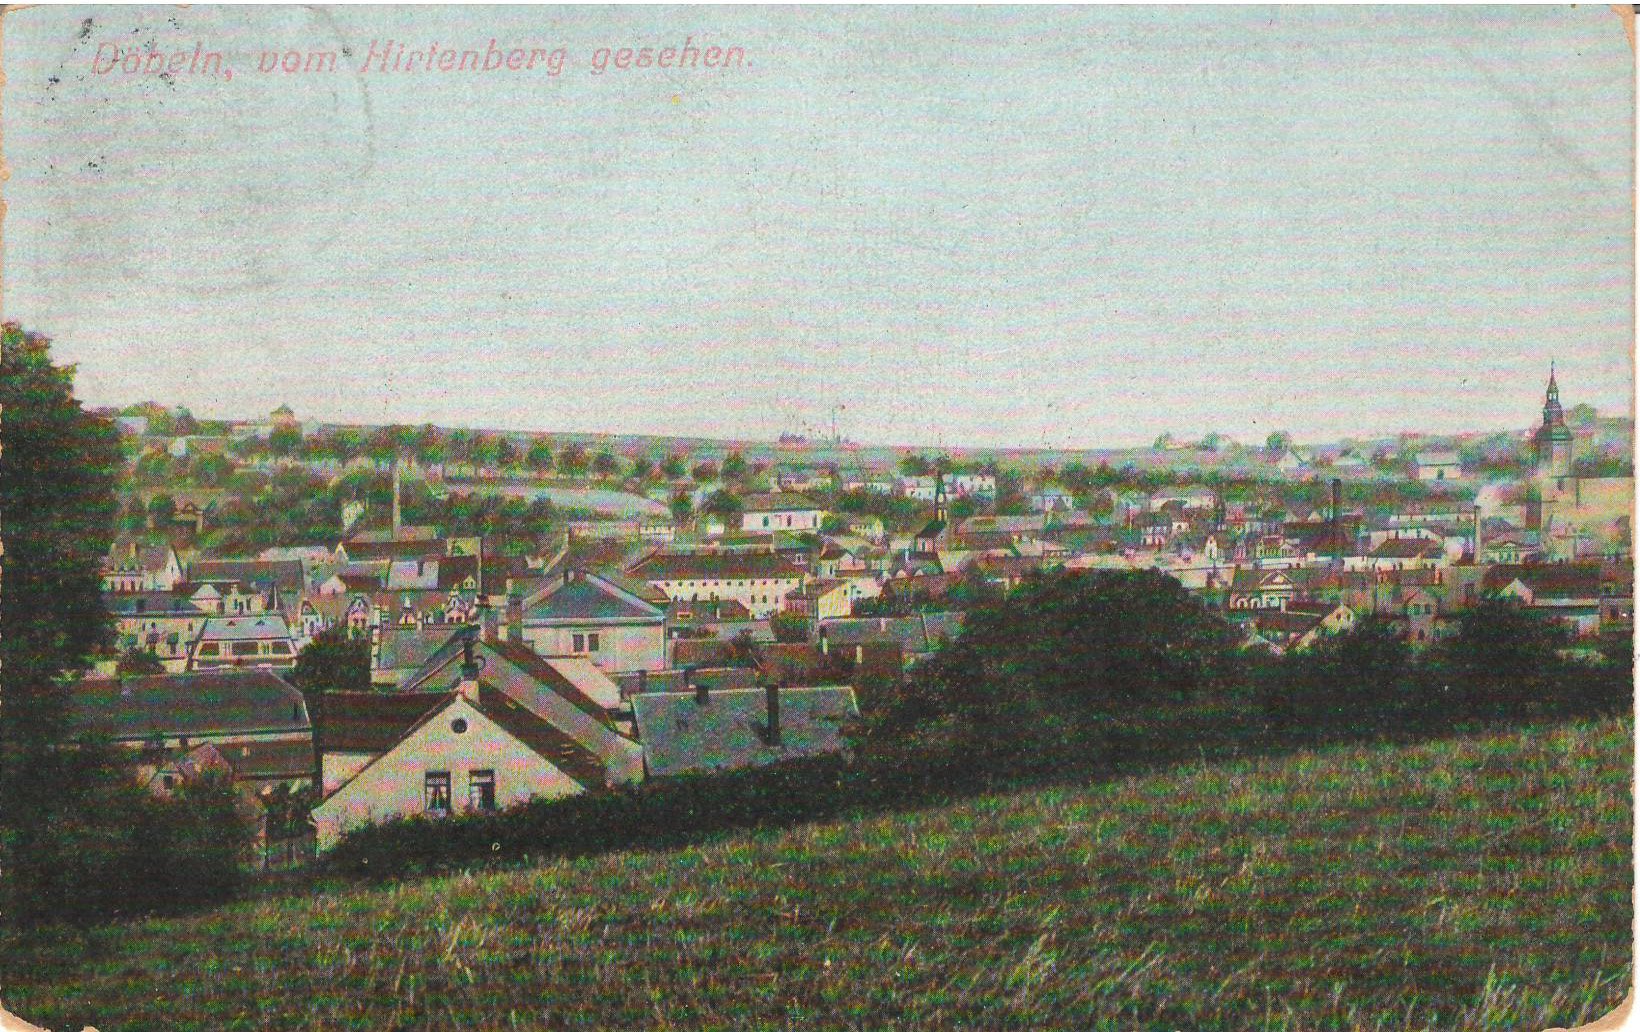 Ansichtspostkarte Döbeln: Blick vom Hirtenberg über Döbeln (Stadtmuseum / Kleine Galerie Döbeln CC BY-NC-SA)